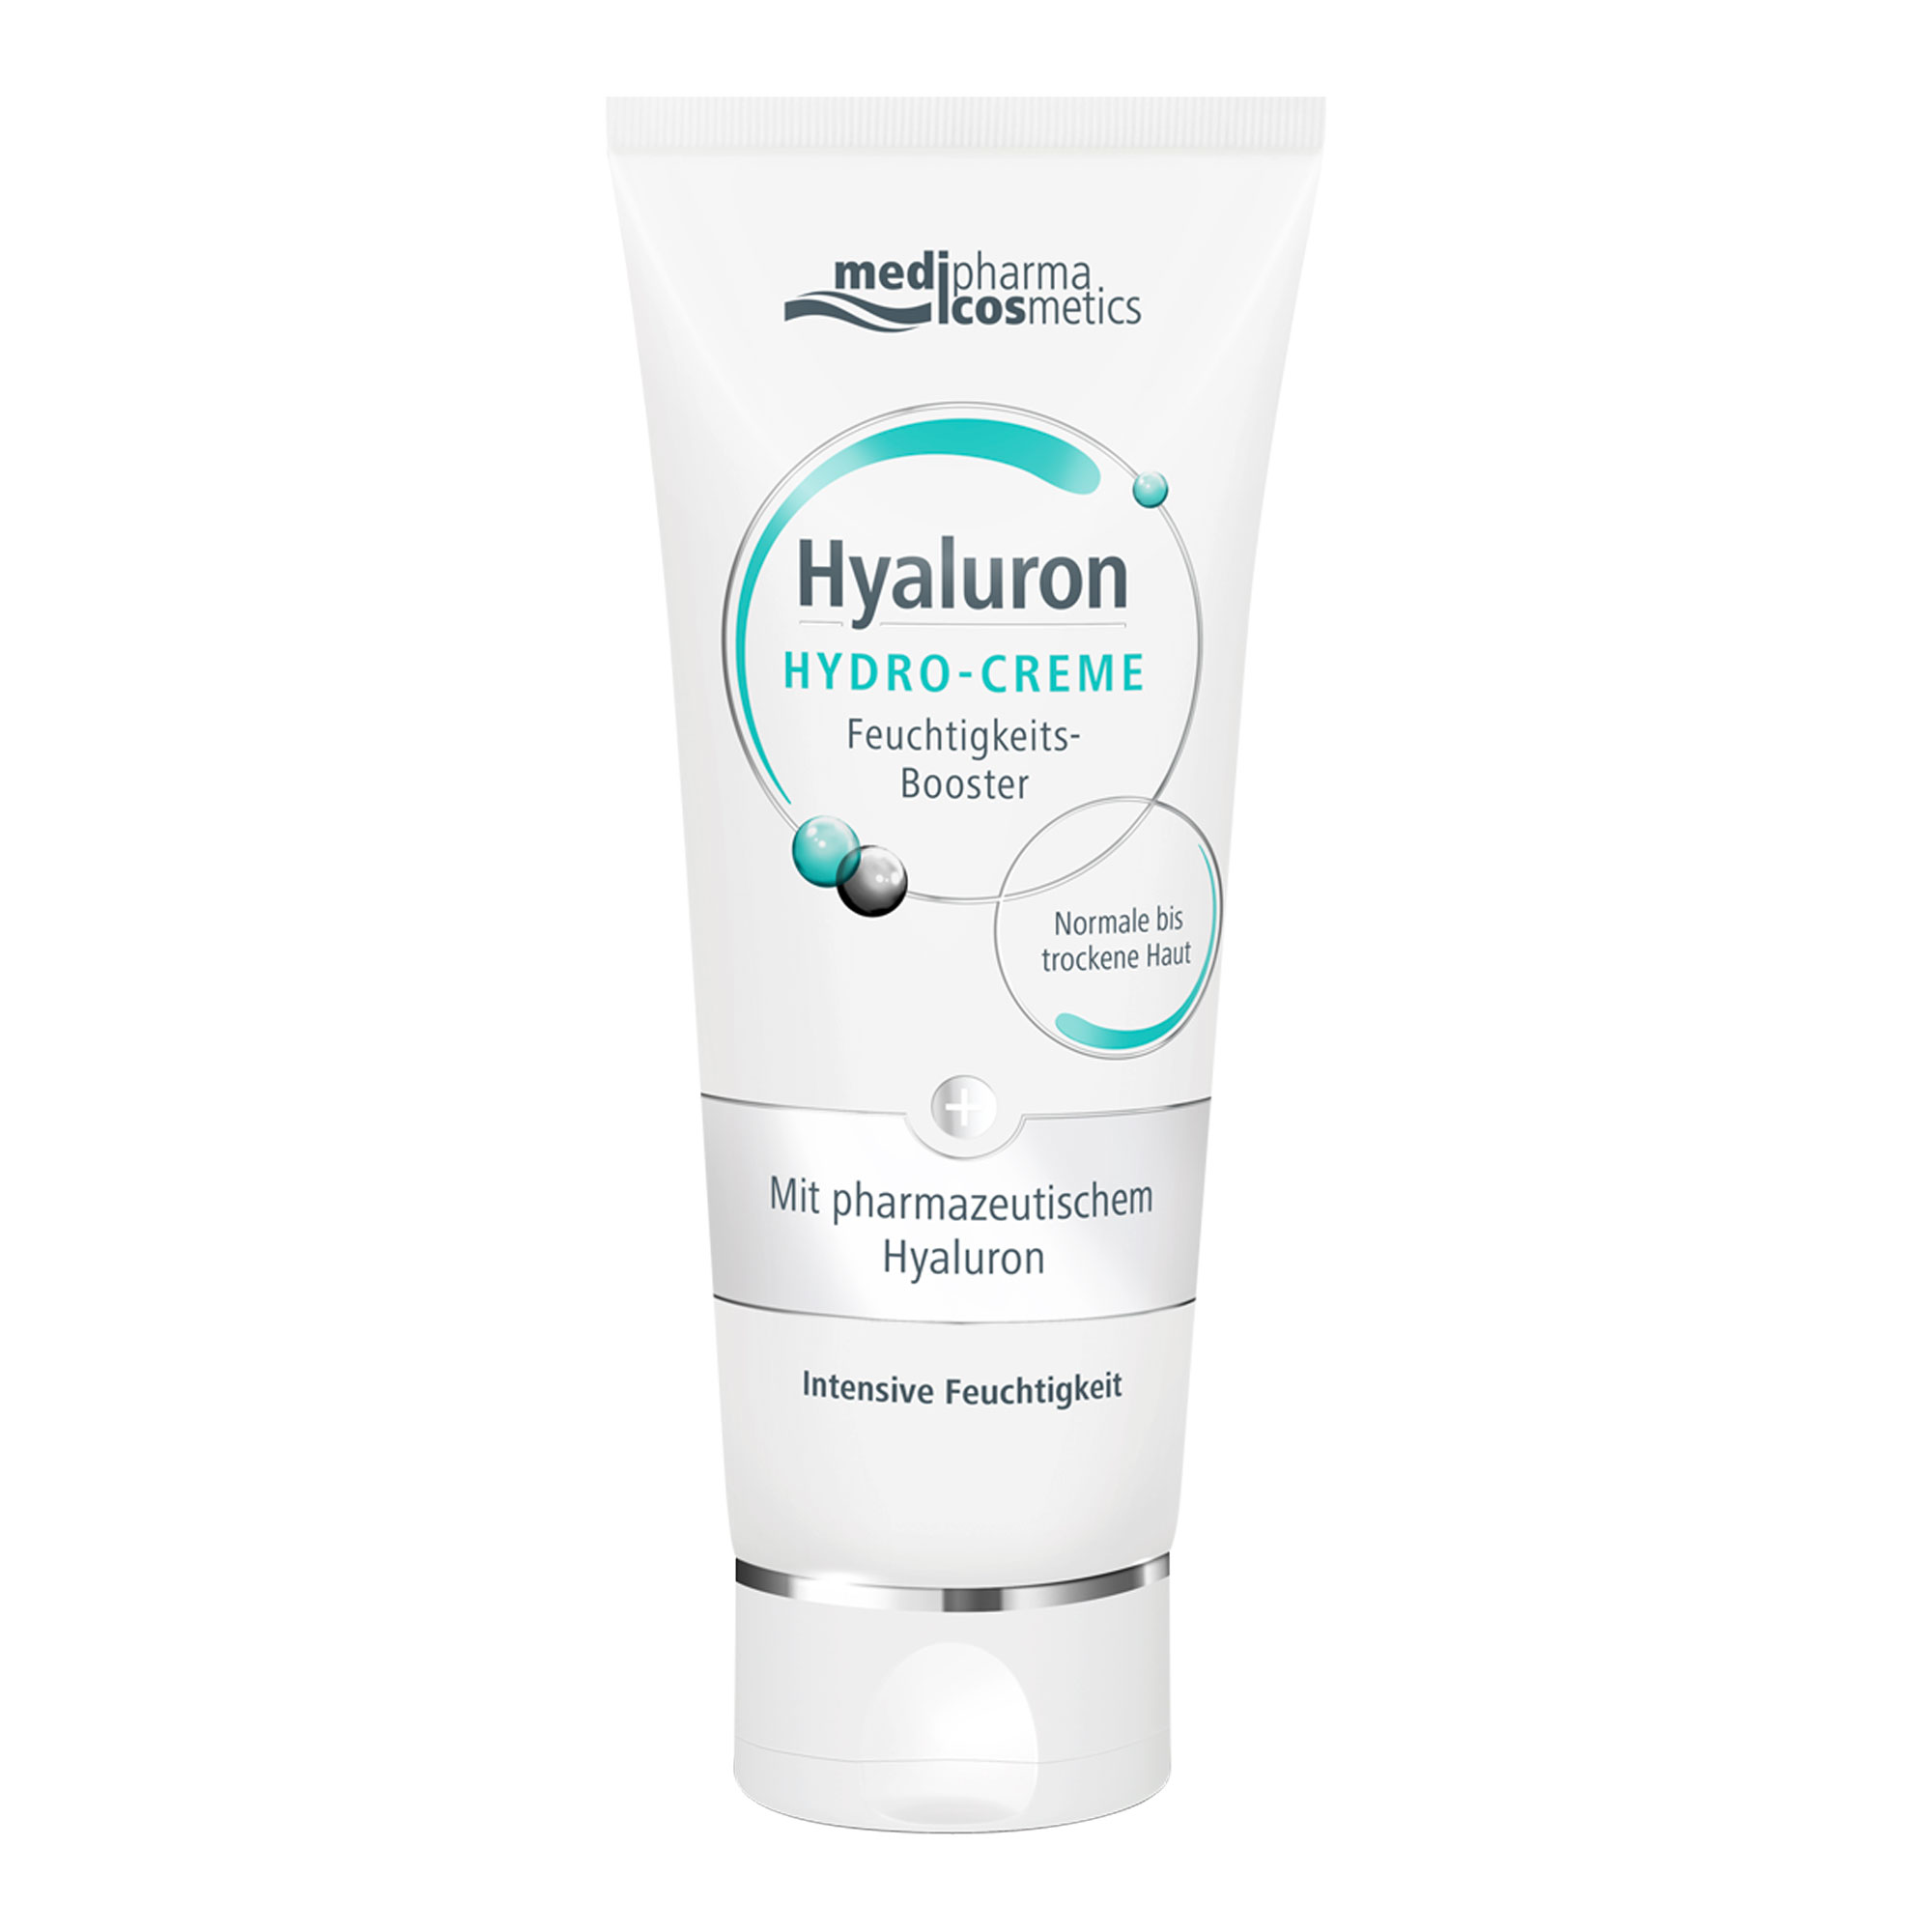 Füllen Sie die Wasserspeicher Ihrer Haut mit der Hyaluron Hydro-Creme auf und erleben das erfrischende Gefühl.